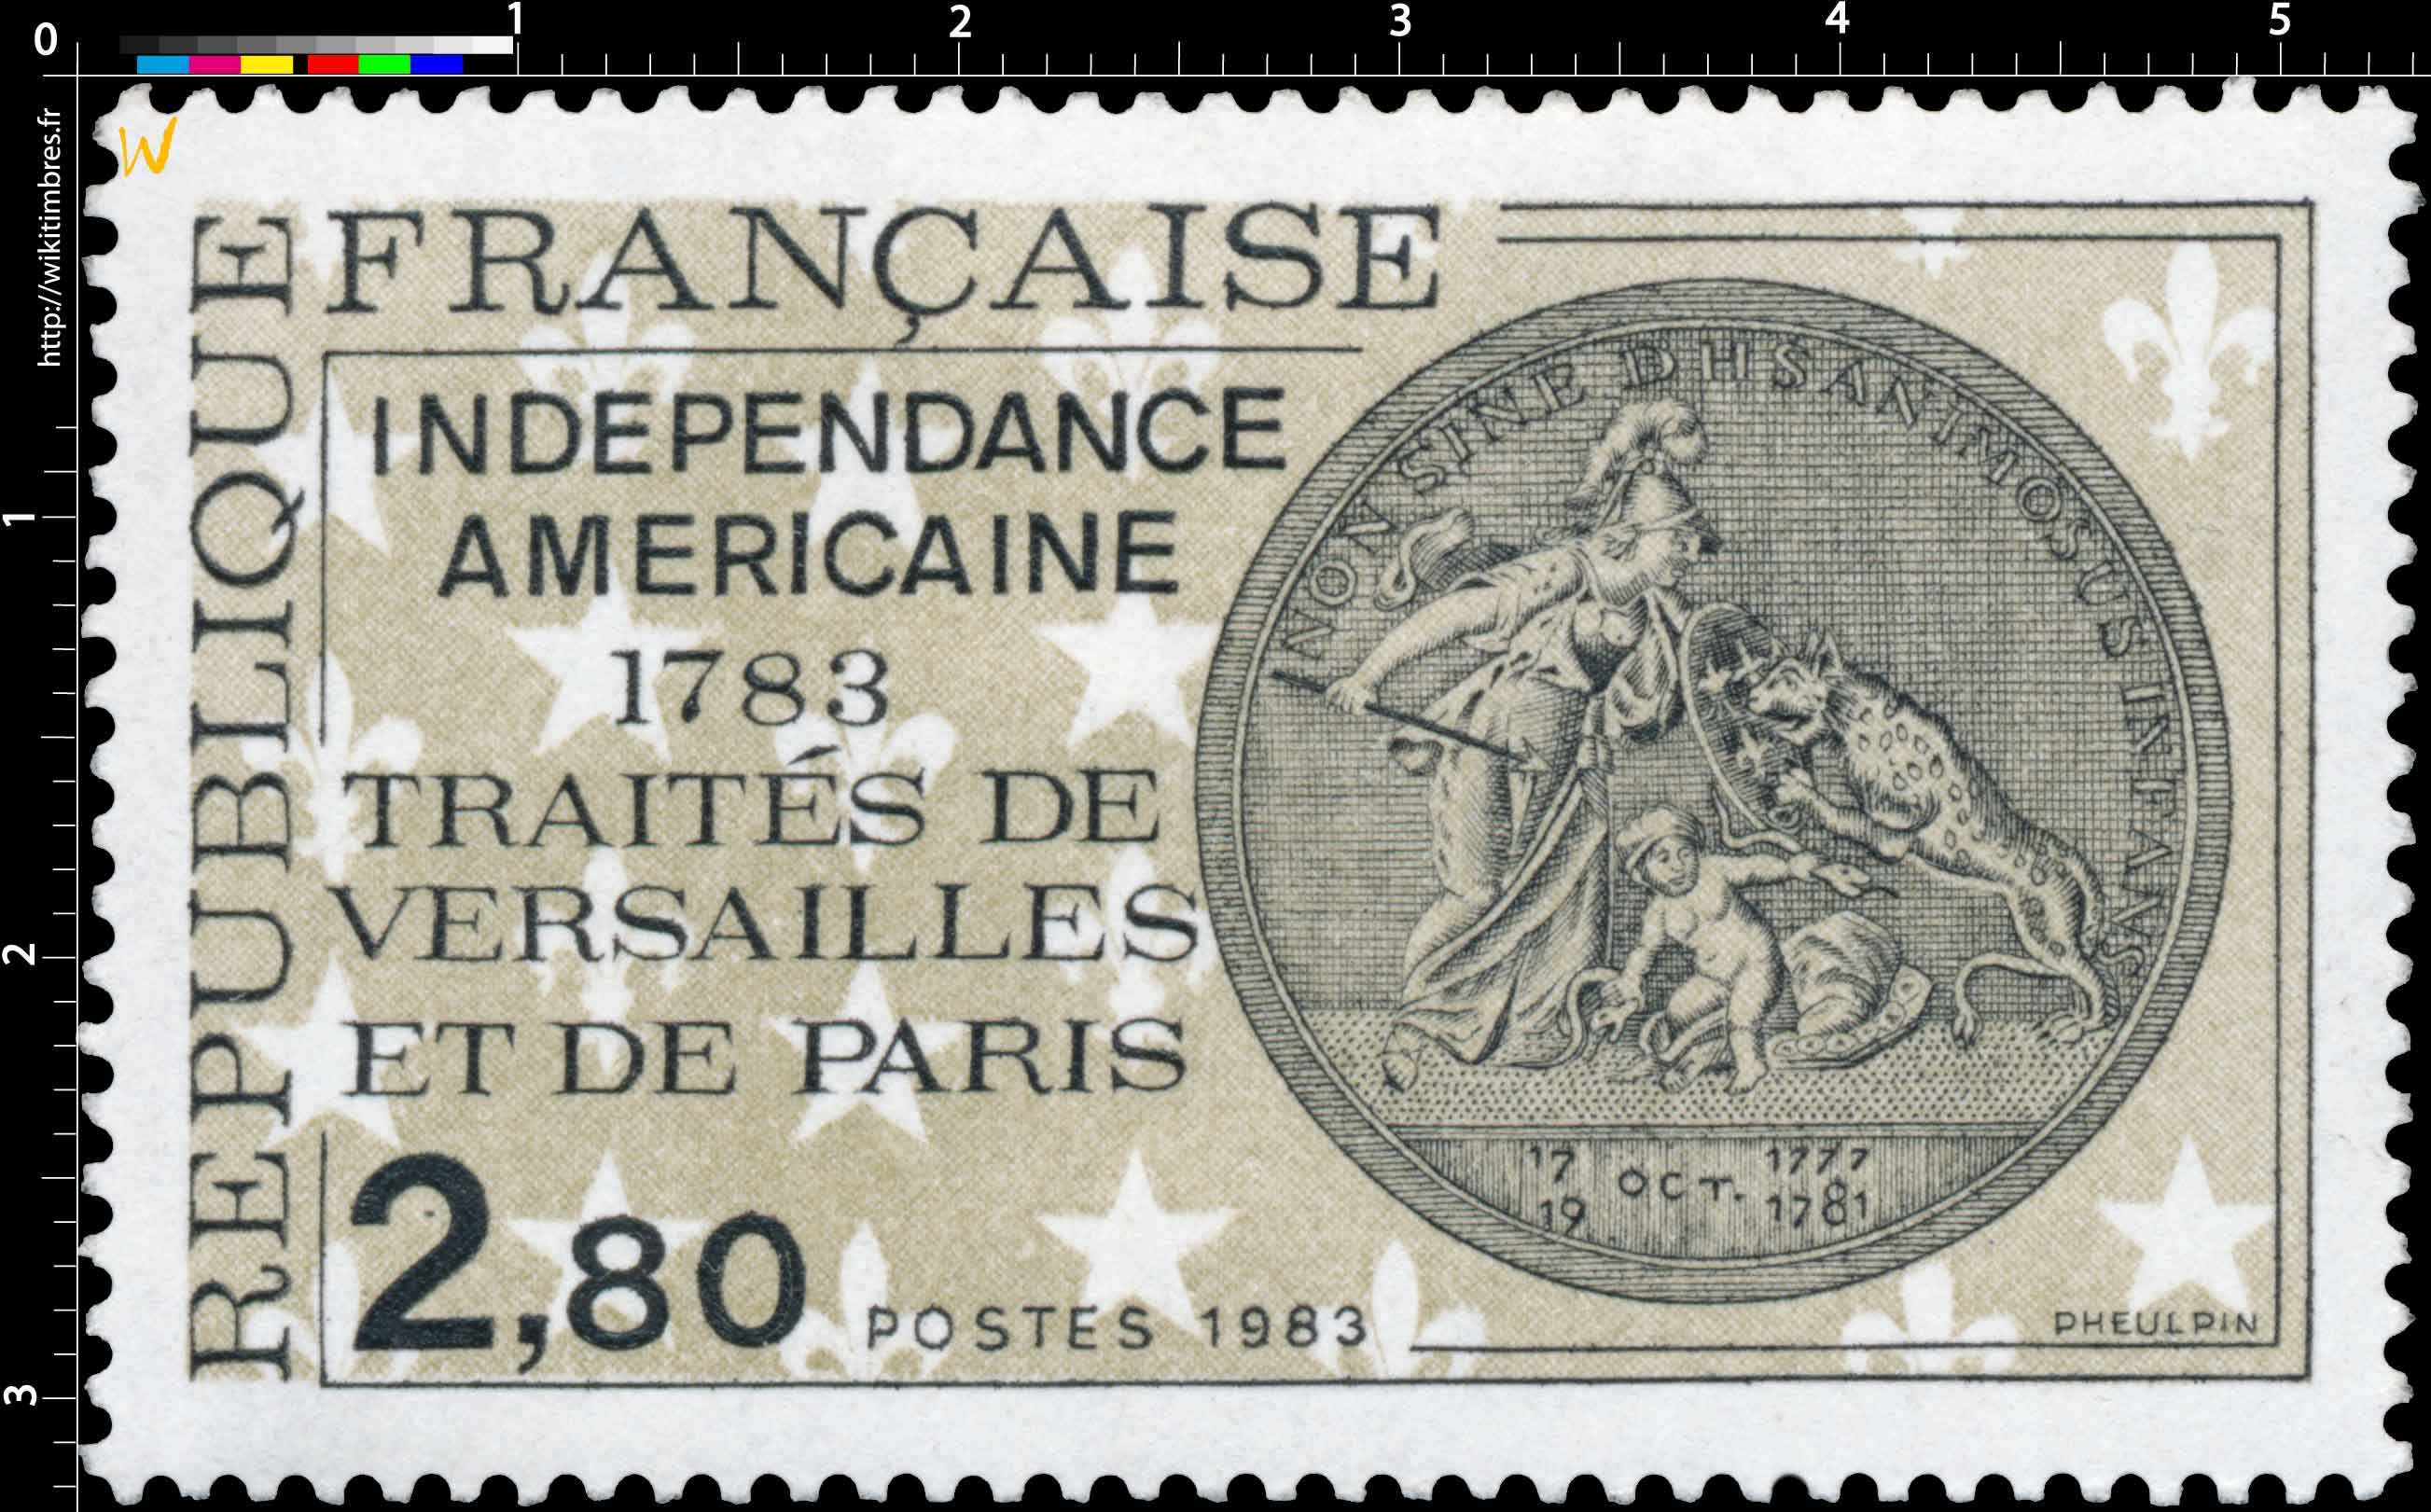 1983 INDÉPENDANCE AMÉRICAINE 1783 TRAITÉS DE VERSAILLES ET DE PARIS